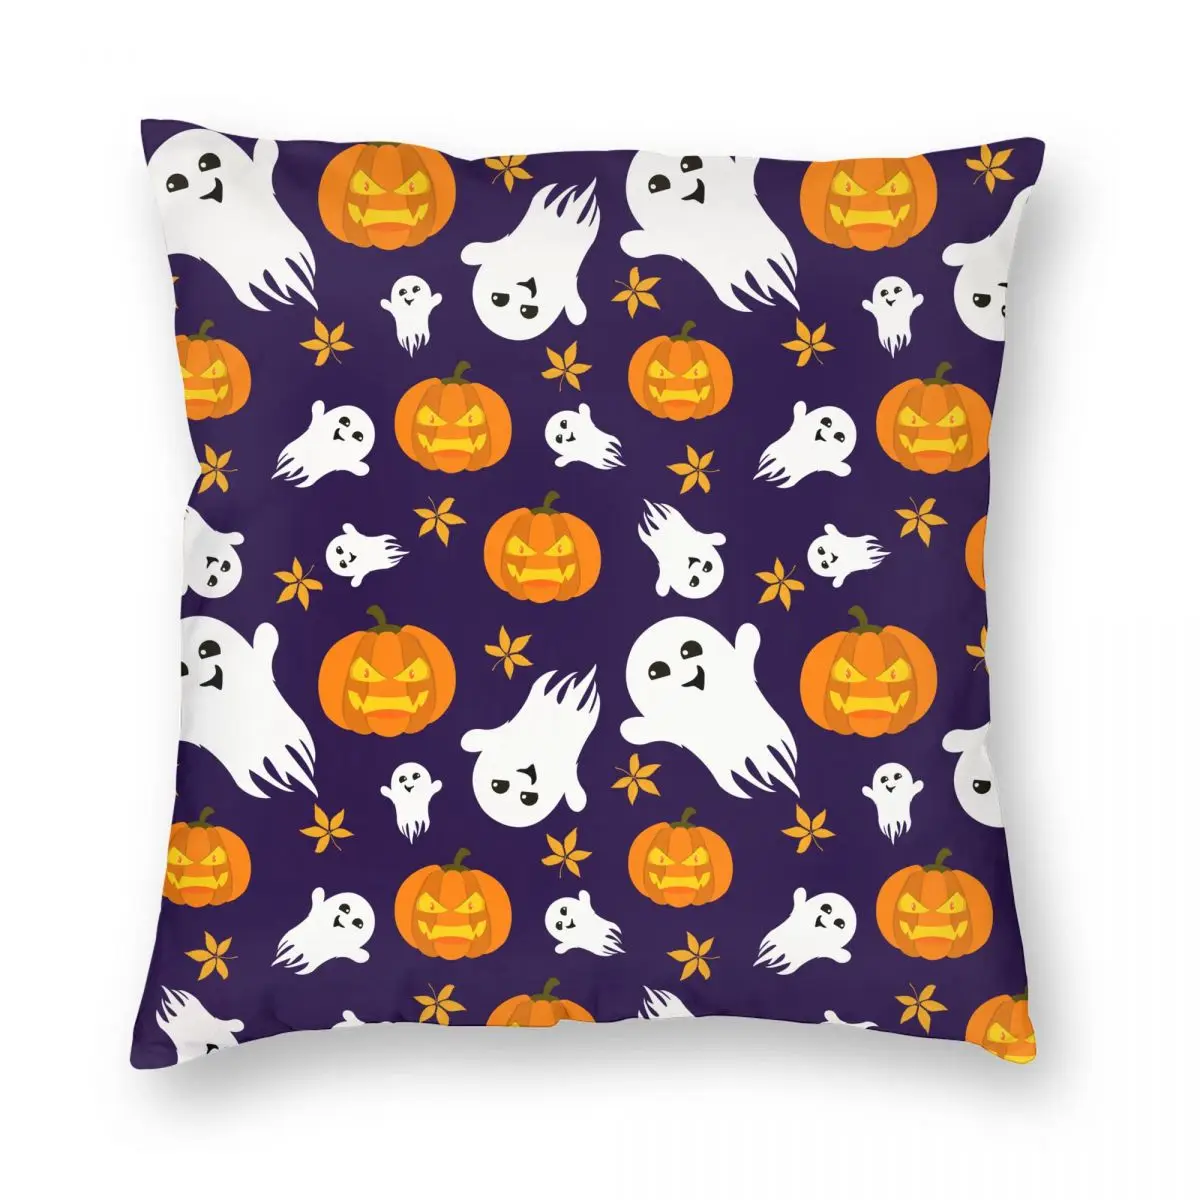 

Наволочка с изображением тыквы и призраков на Хэллоуин, двухсторонний тканевый чехол для подушки, декоративная подушка, чехол для спальни